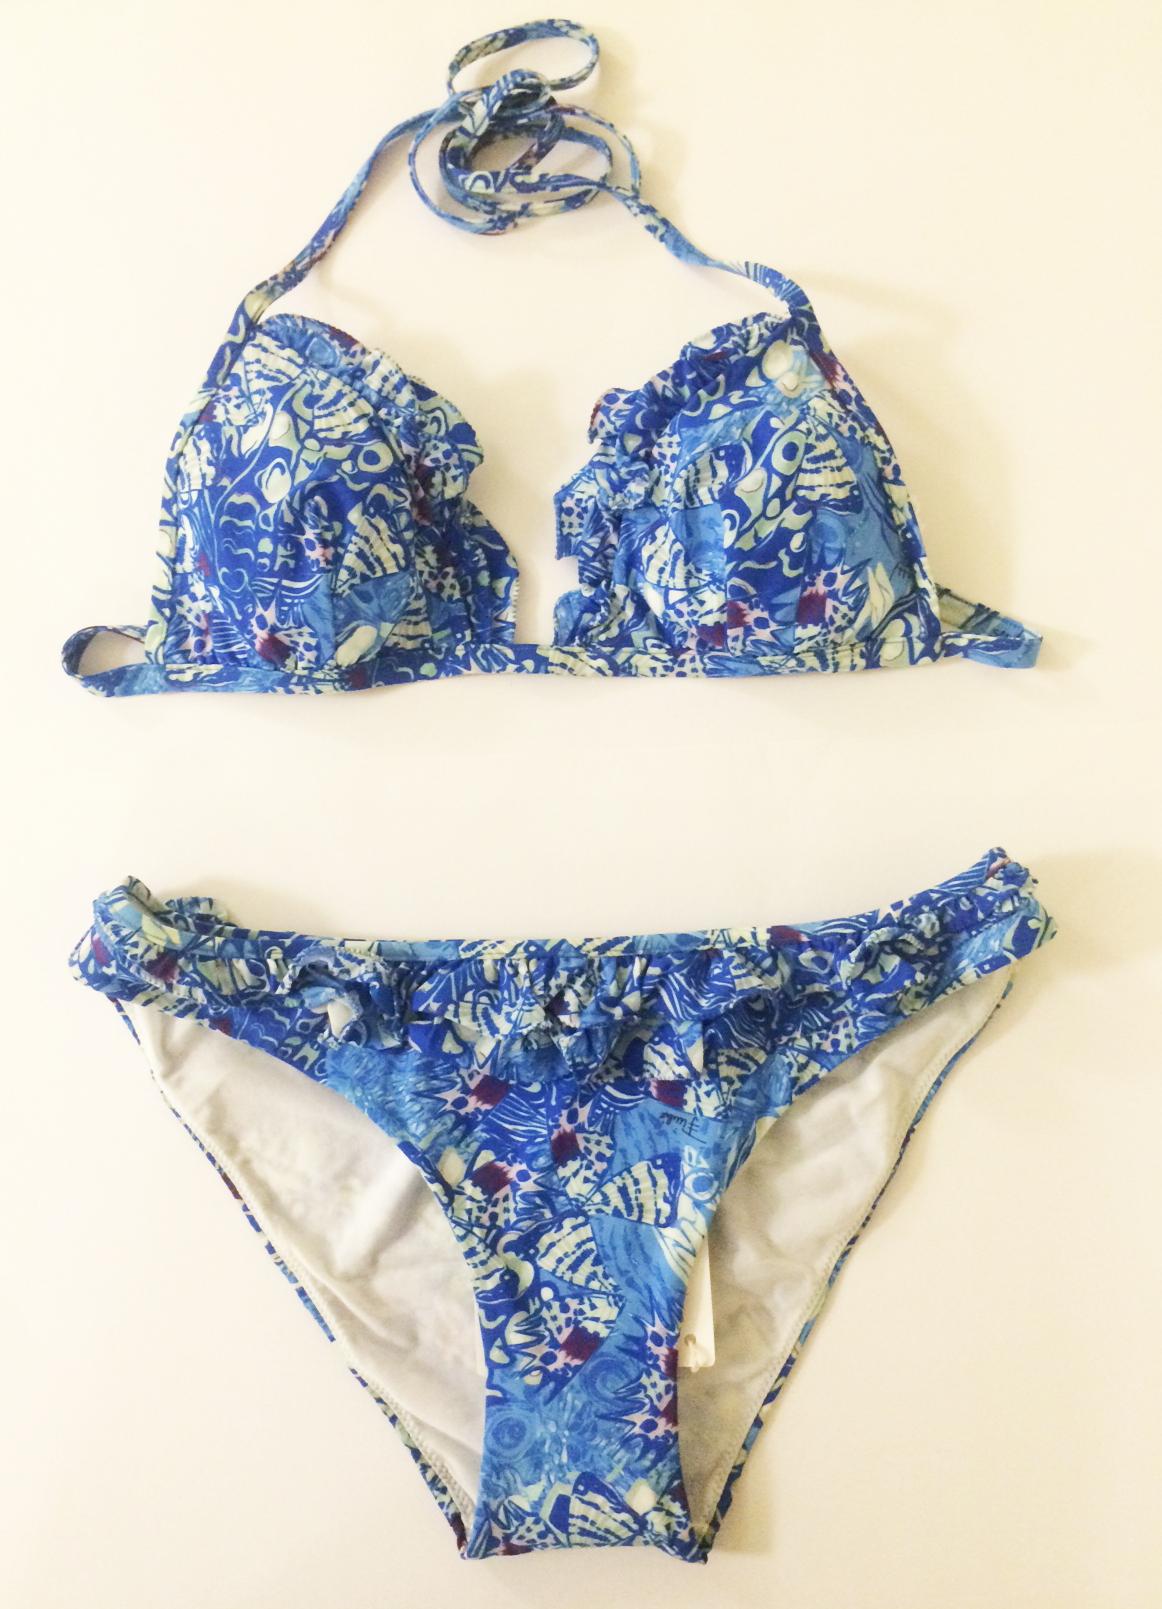 Blauer Bikini-Badeanzug von Emilio Pucci, neu mit Anhängern, mit einem Print in Form von Schmetterlingsflügeln. Rüschenbesatz. Neckholder zum Binden am Oberteil und Pucci-Emblemverschluss am Rücken. 

72% Nylon, 28% Elastan. Vollständig